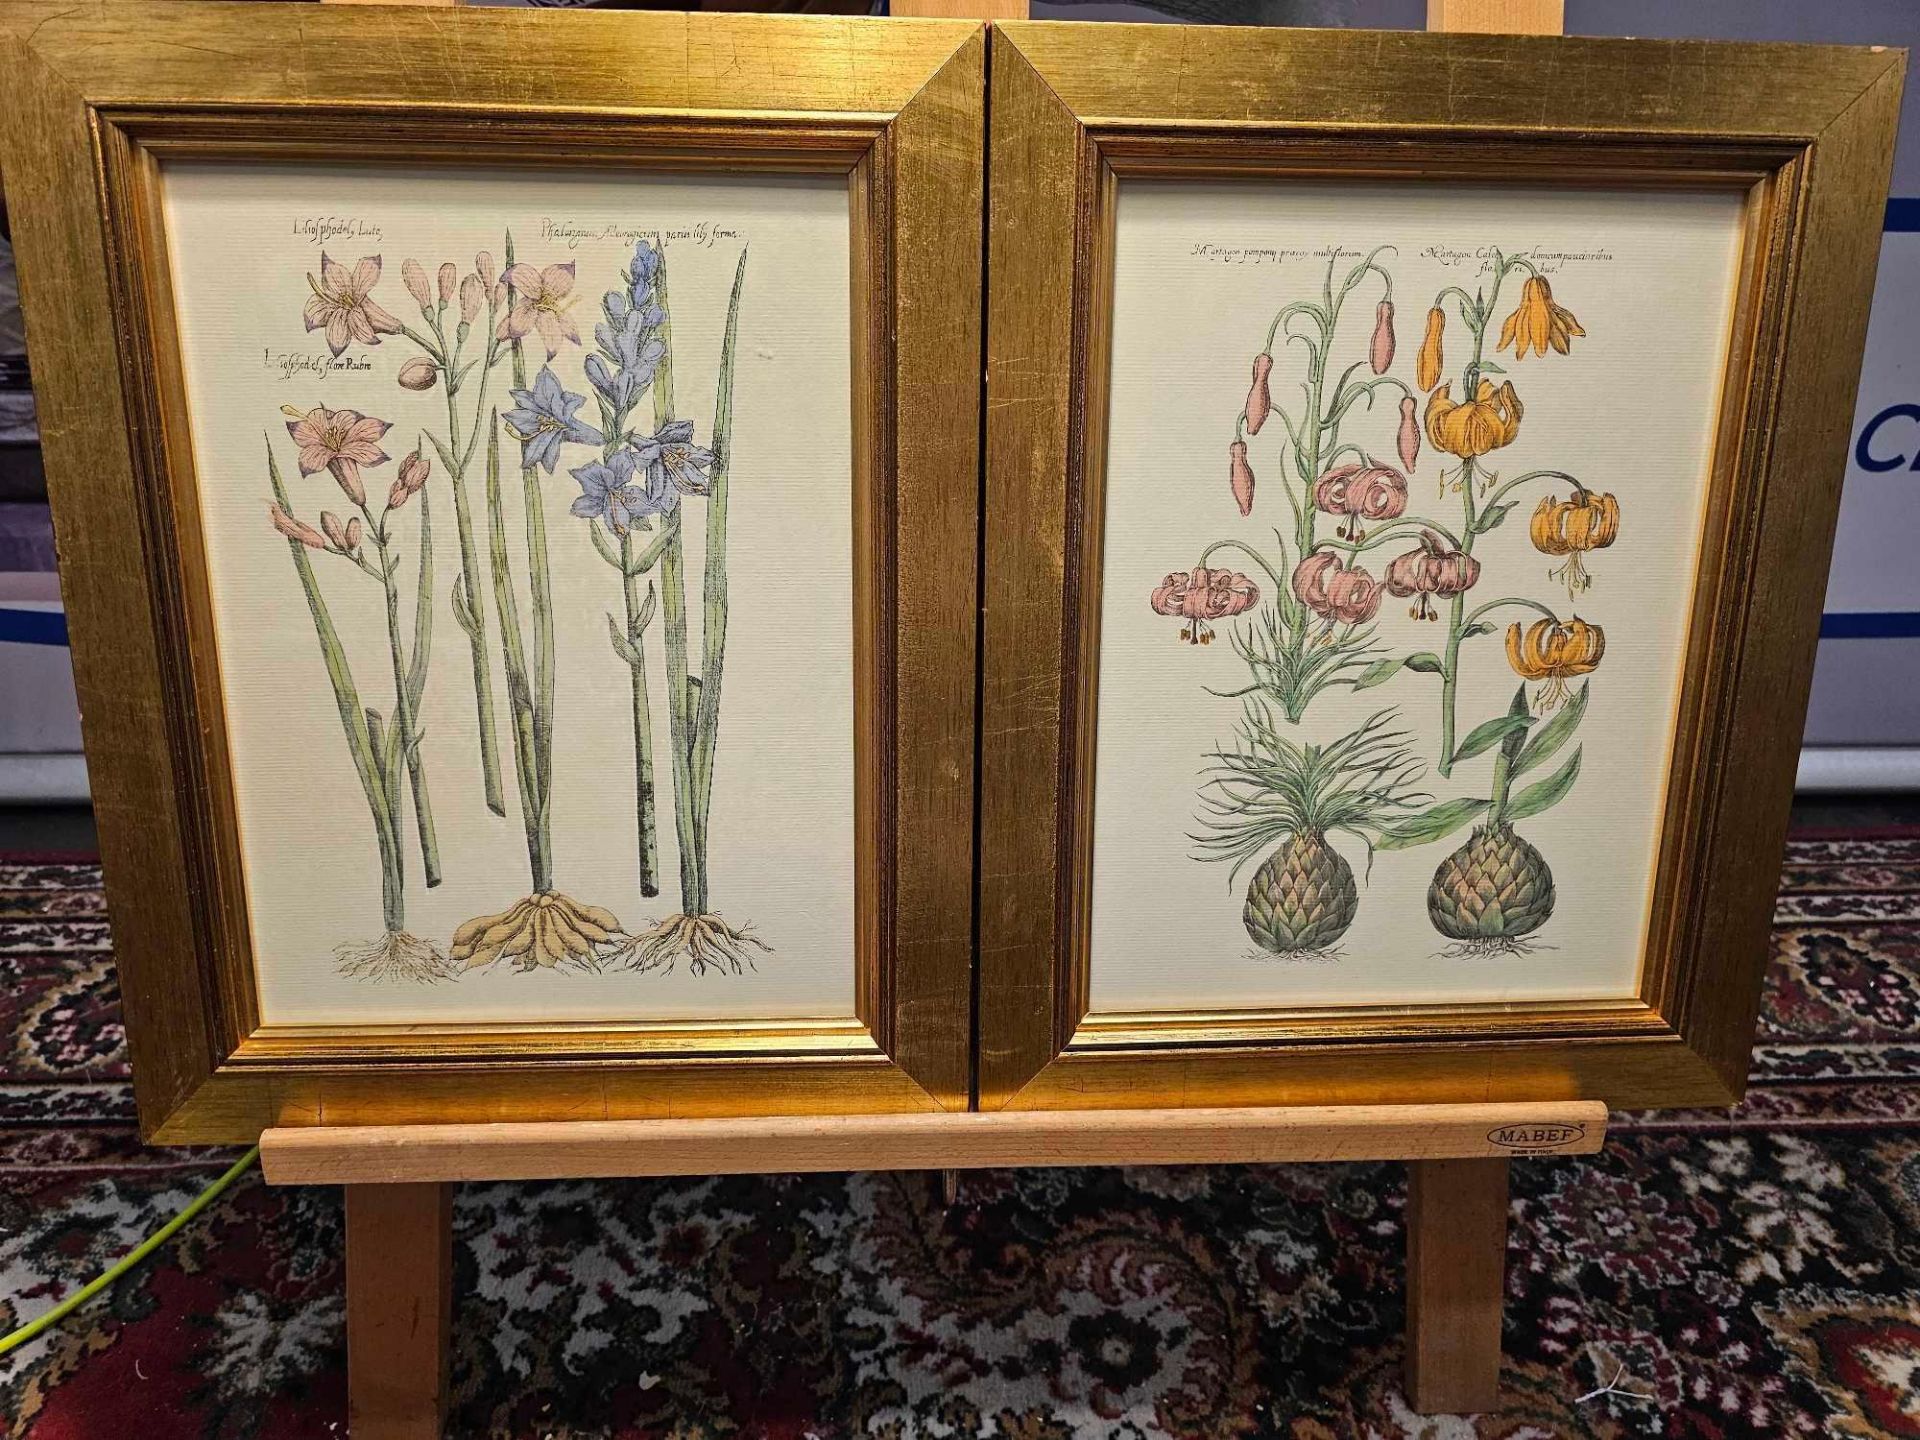 2 x Framed Botanical Prints (1) 230-236 Botanical By Emanuel Sweet C.1612 (2) Liliosphodel,